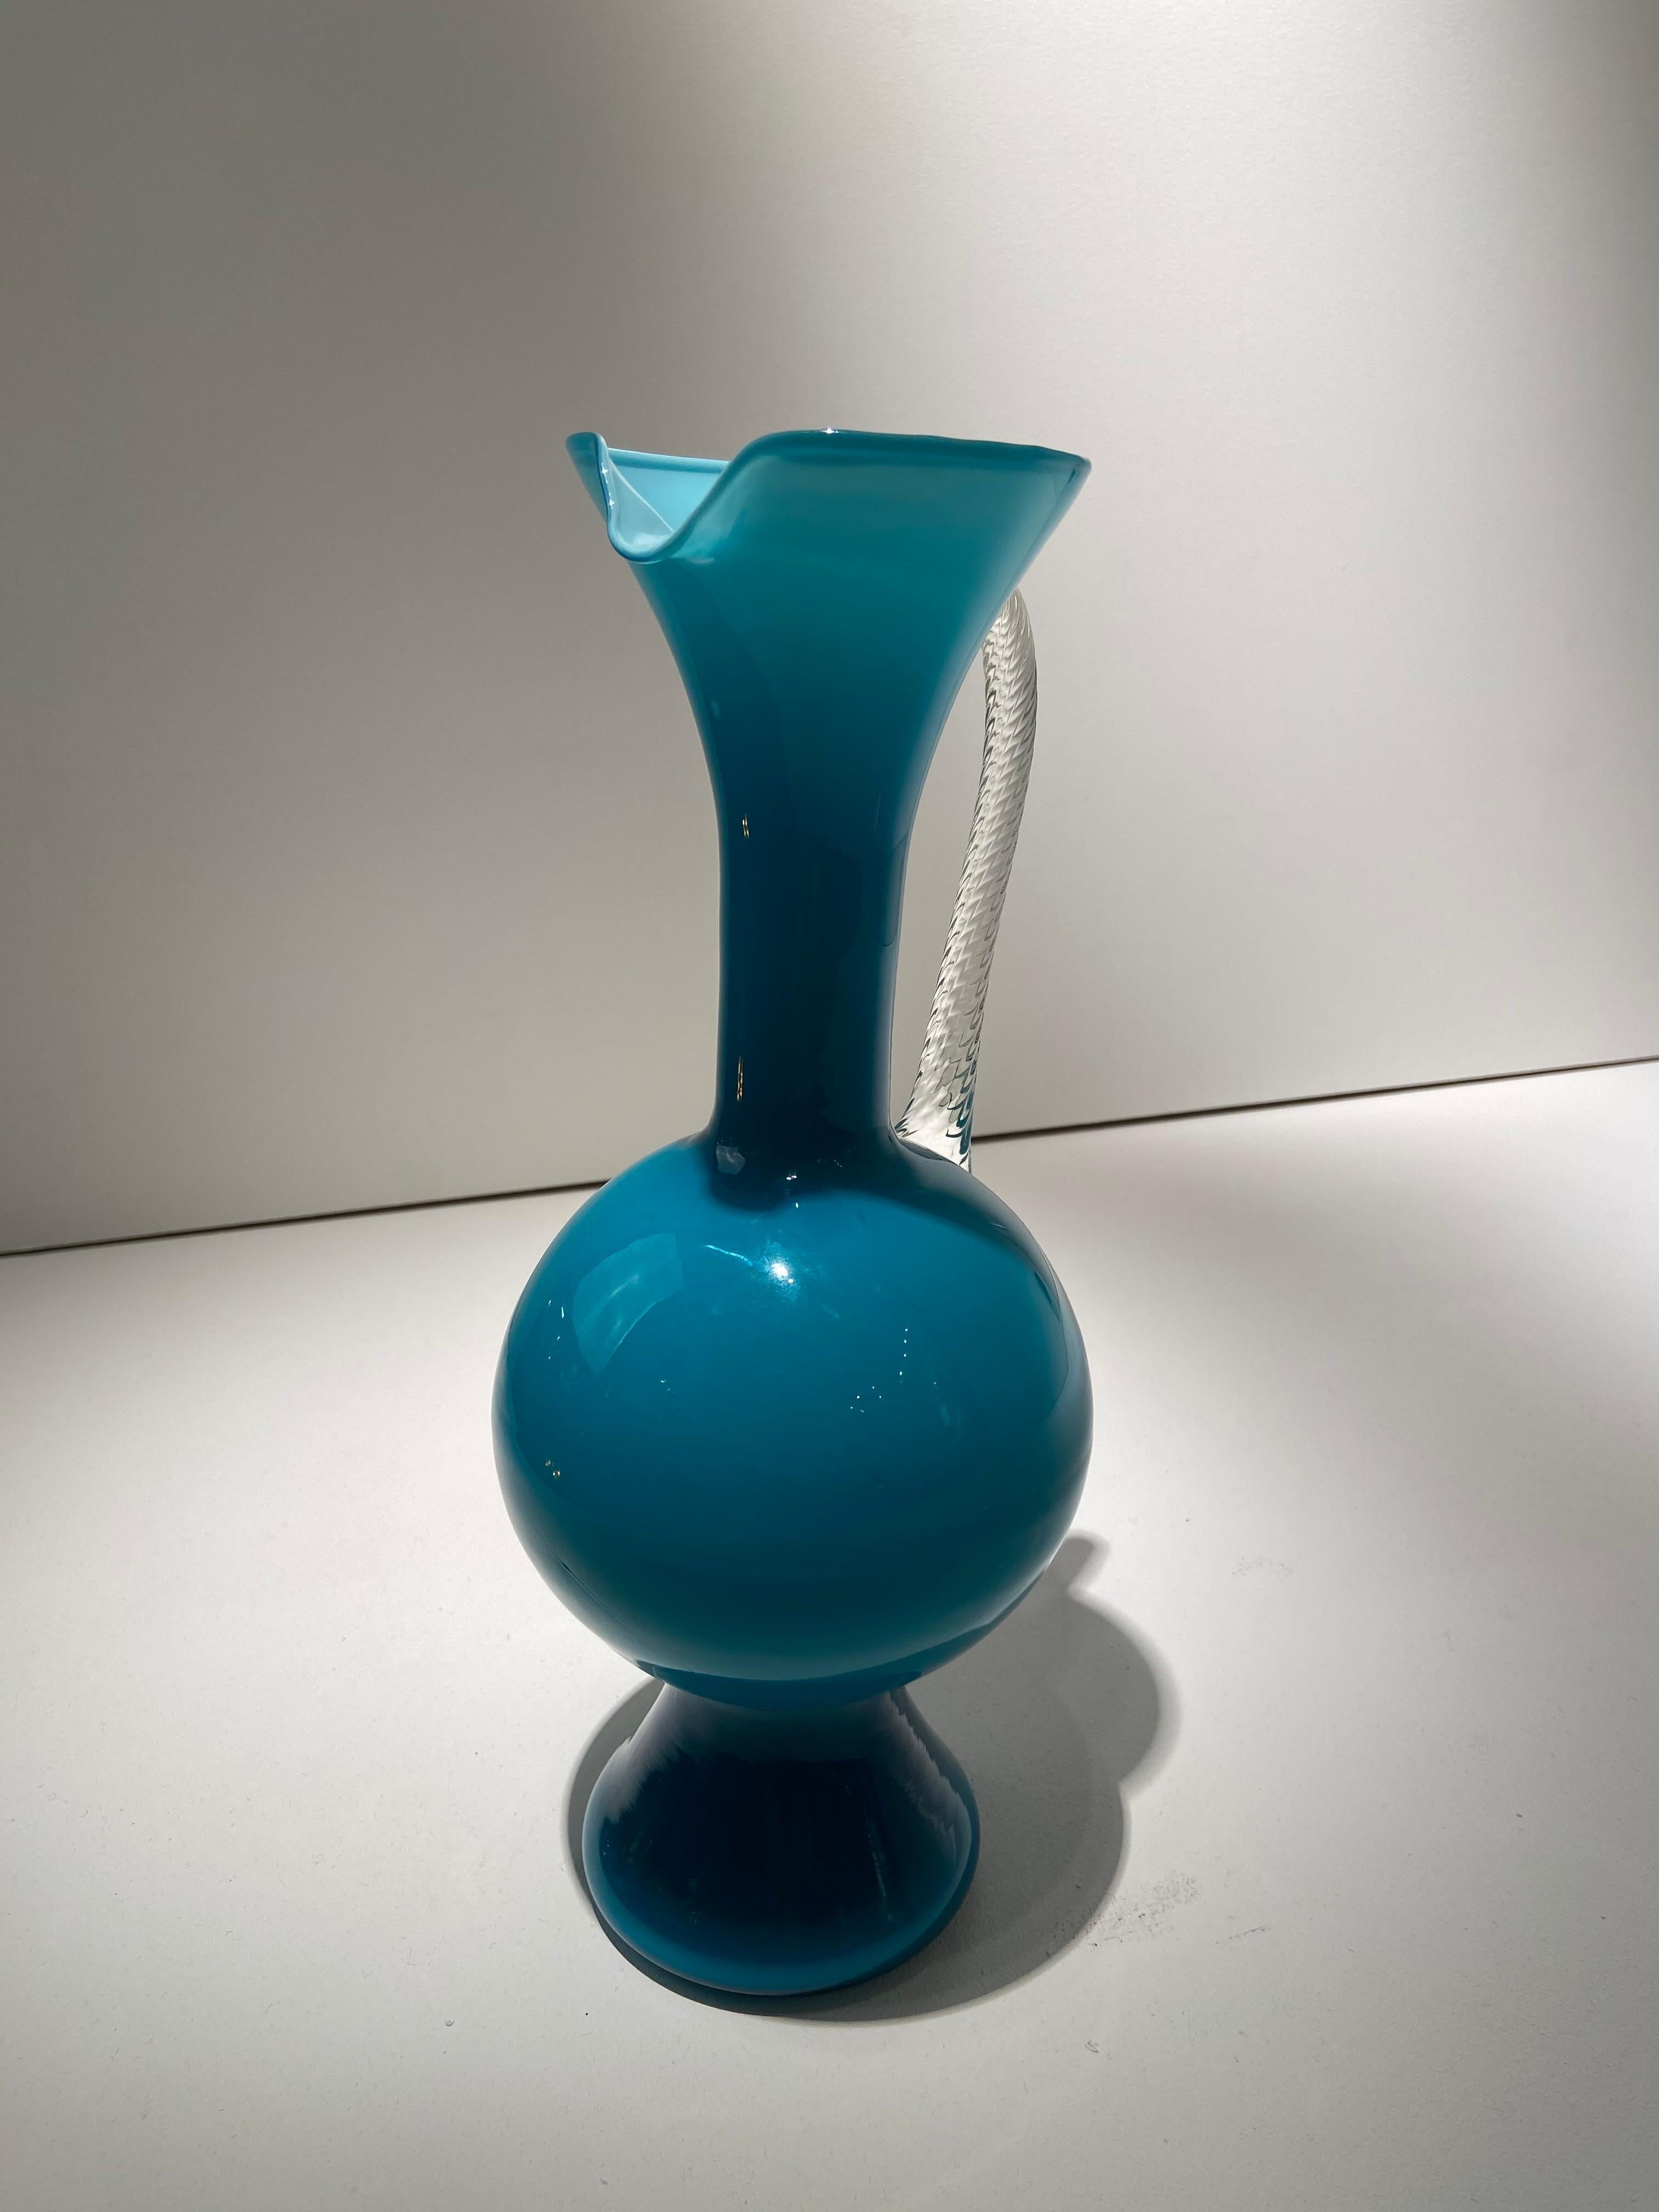 Opaline Glass Empoli Art Glass Pitcher For Sale